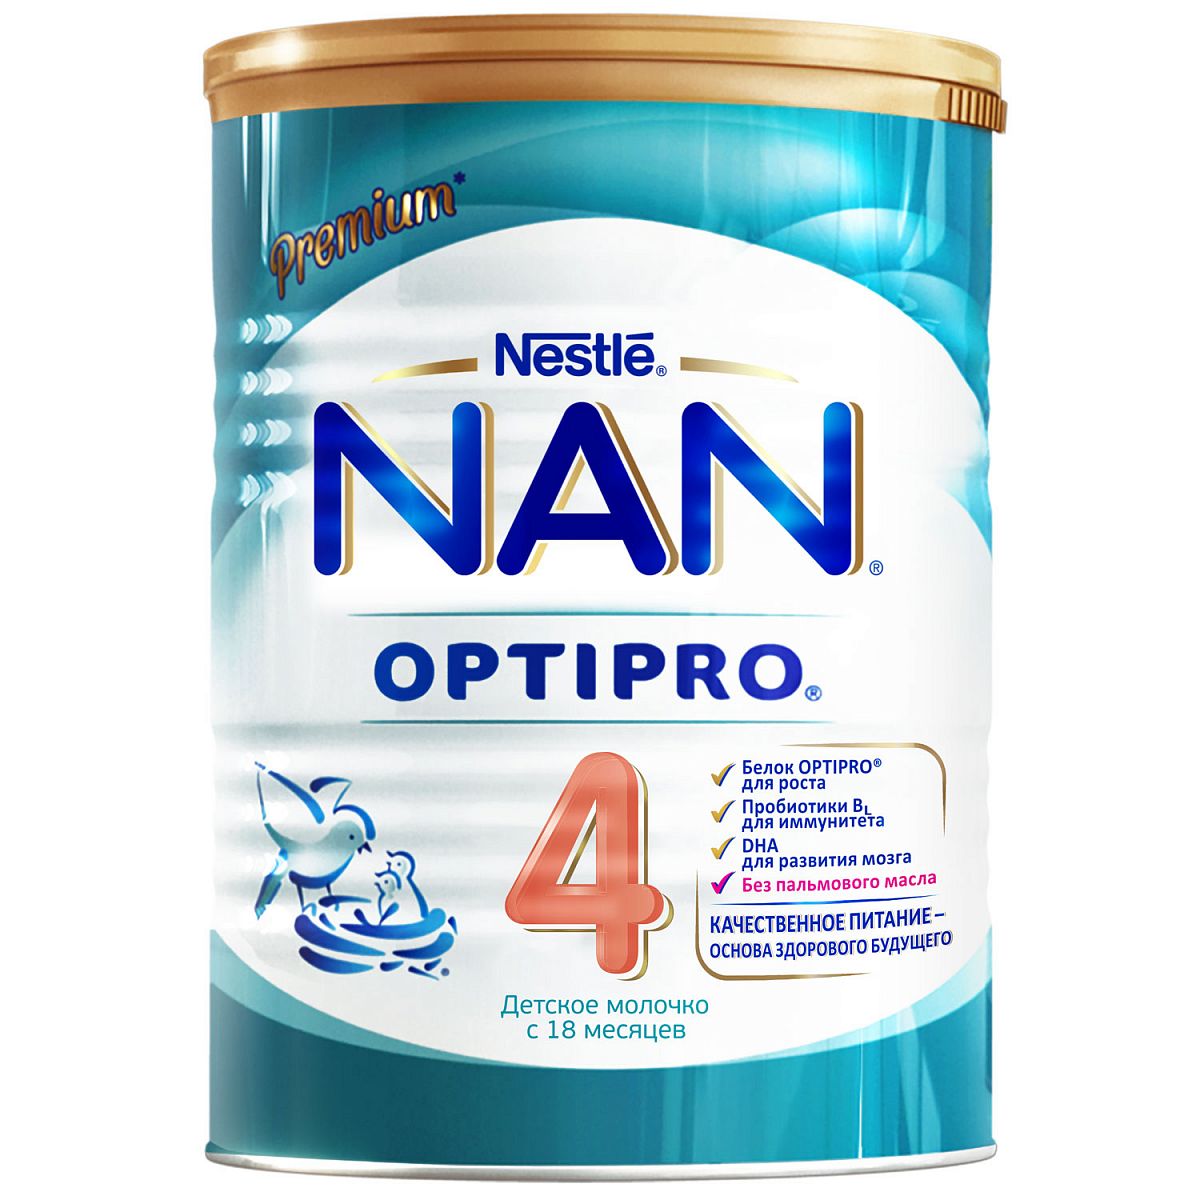 Детское молочко NAN 4 Optipro c 18 месяцев 400 г оливковое масло детское fleur alpine extra virgin с 6 месяцев 500 мл